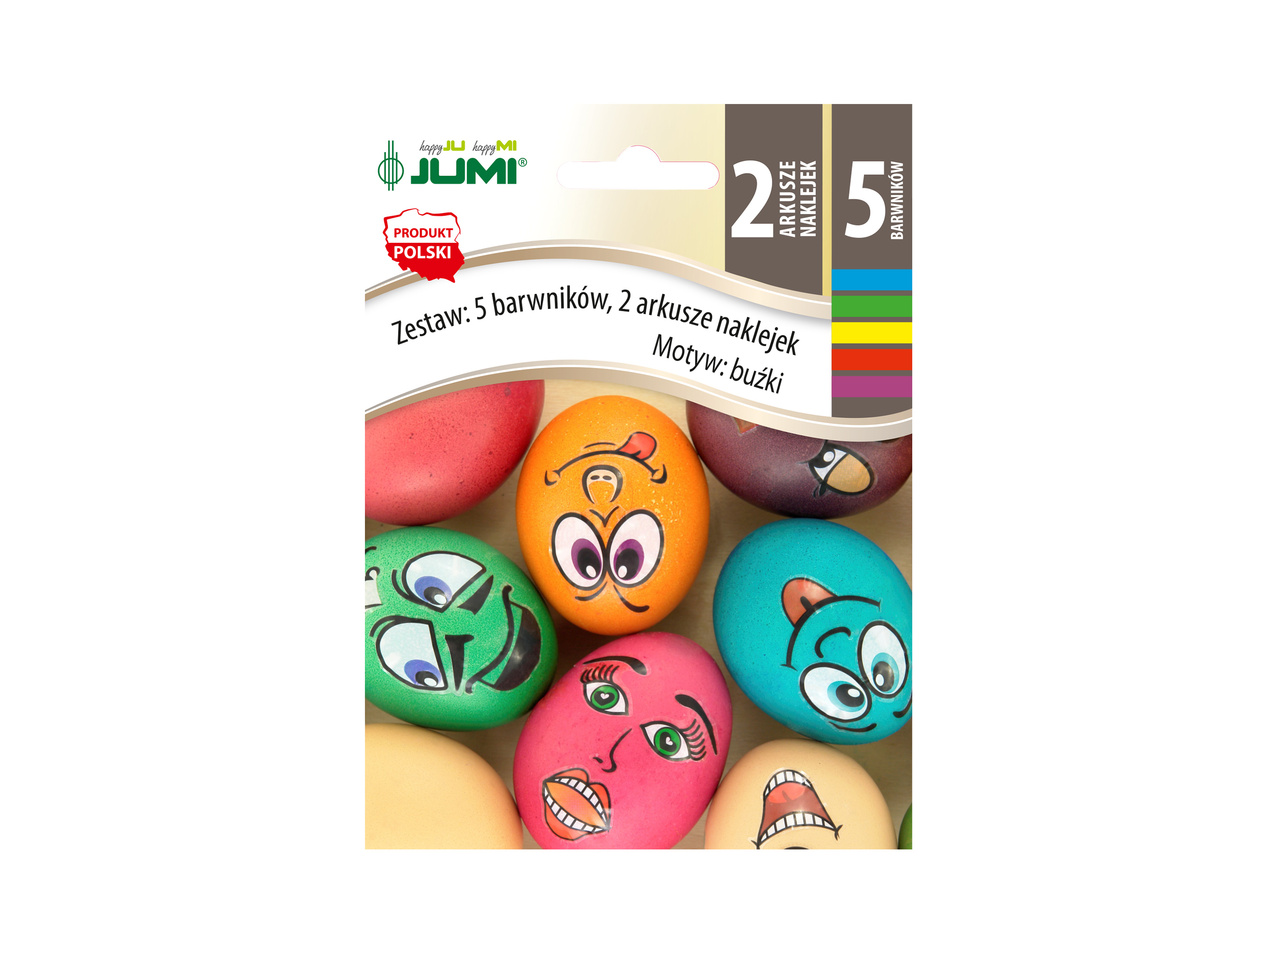 Zestaw do farbowania lub do dekoracji jajek cena 3,49 PLN